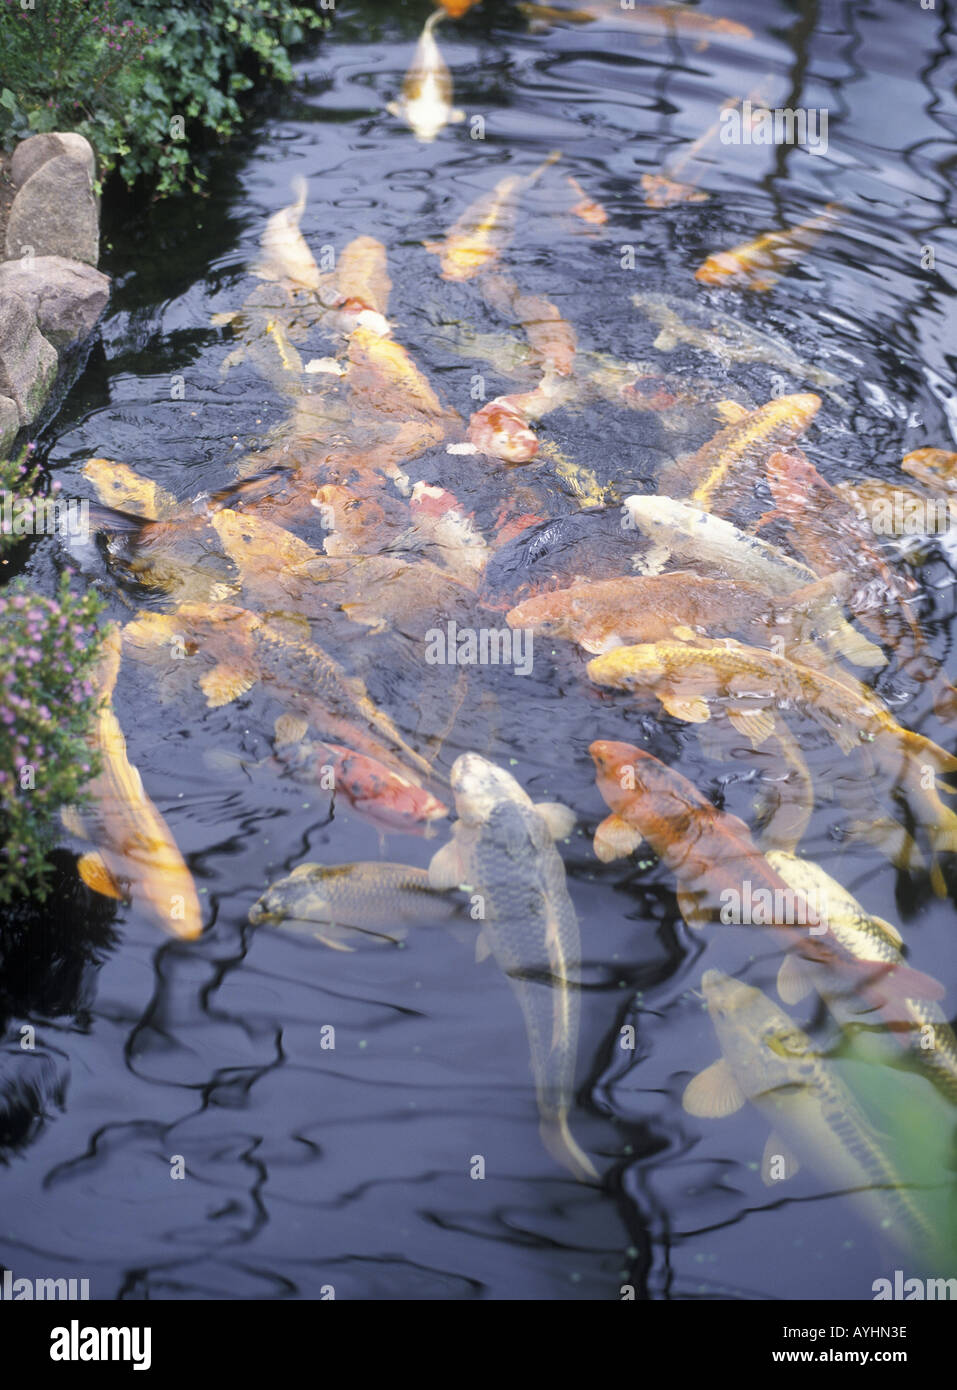 Fischteich mit Koi Karpfen Foto Stock